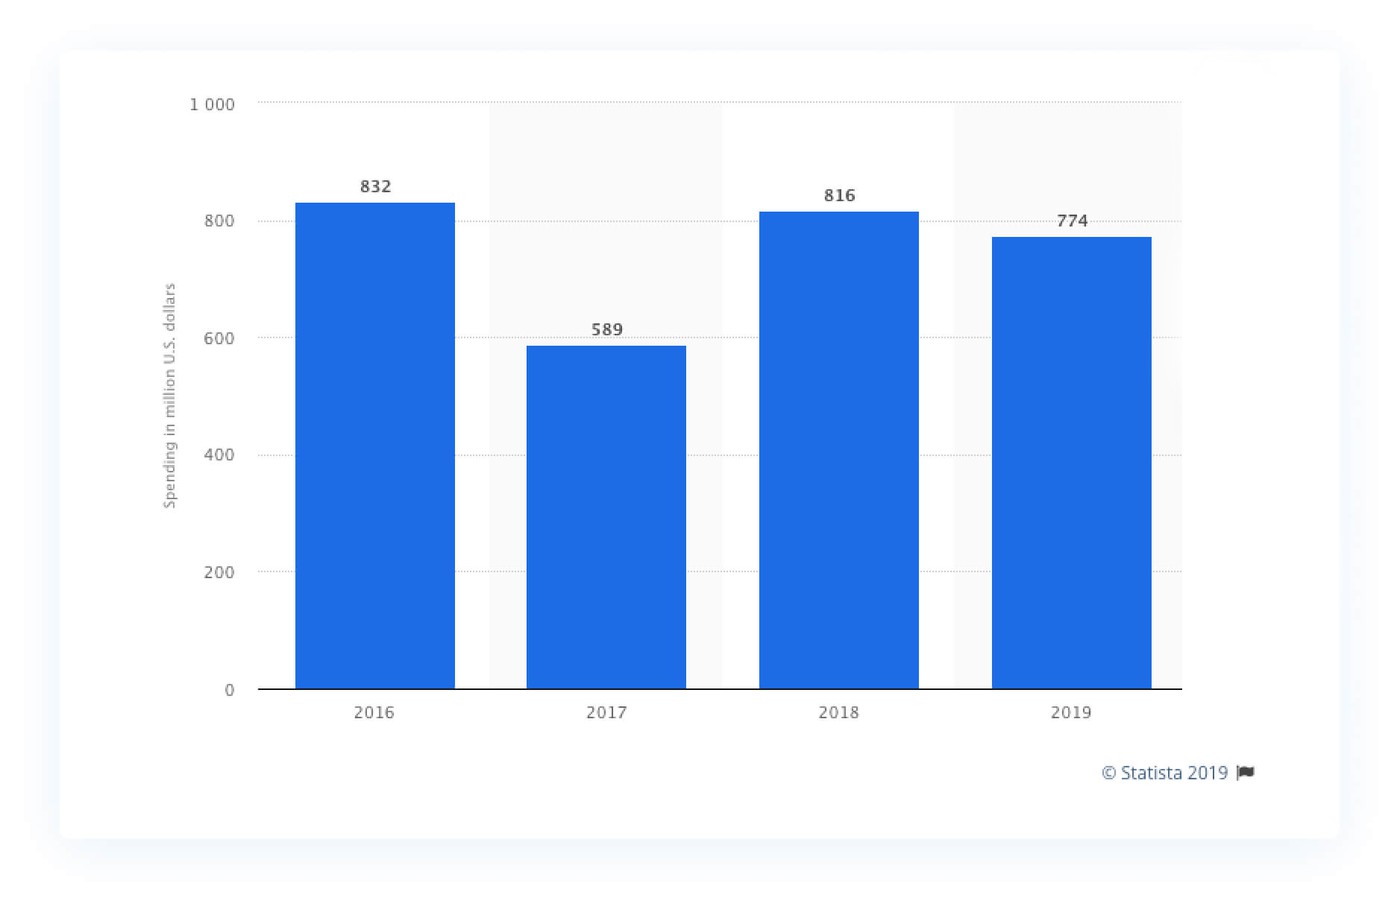 Imagem que mostra um gráfico com o número de vendas em dólares a cada ano. Na horizontal, temos os anos e na vertical o número de downloads: em 2016 foram 832 milhões, em 2017 - 589 milhões, em 2018 - 816 milhões e em 2019 - 774 milhões de dólares em vendas.